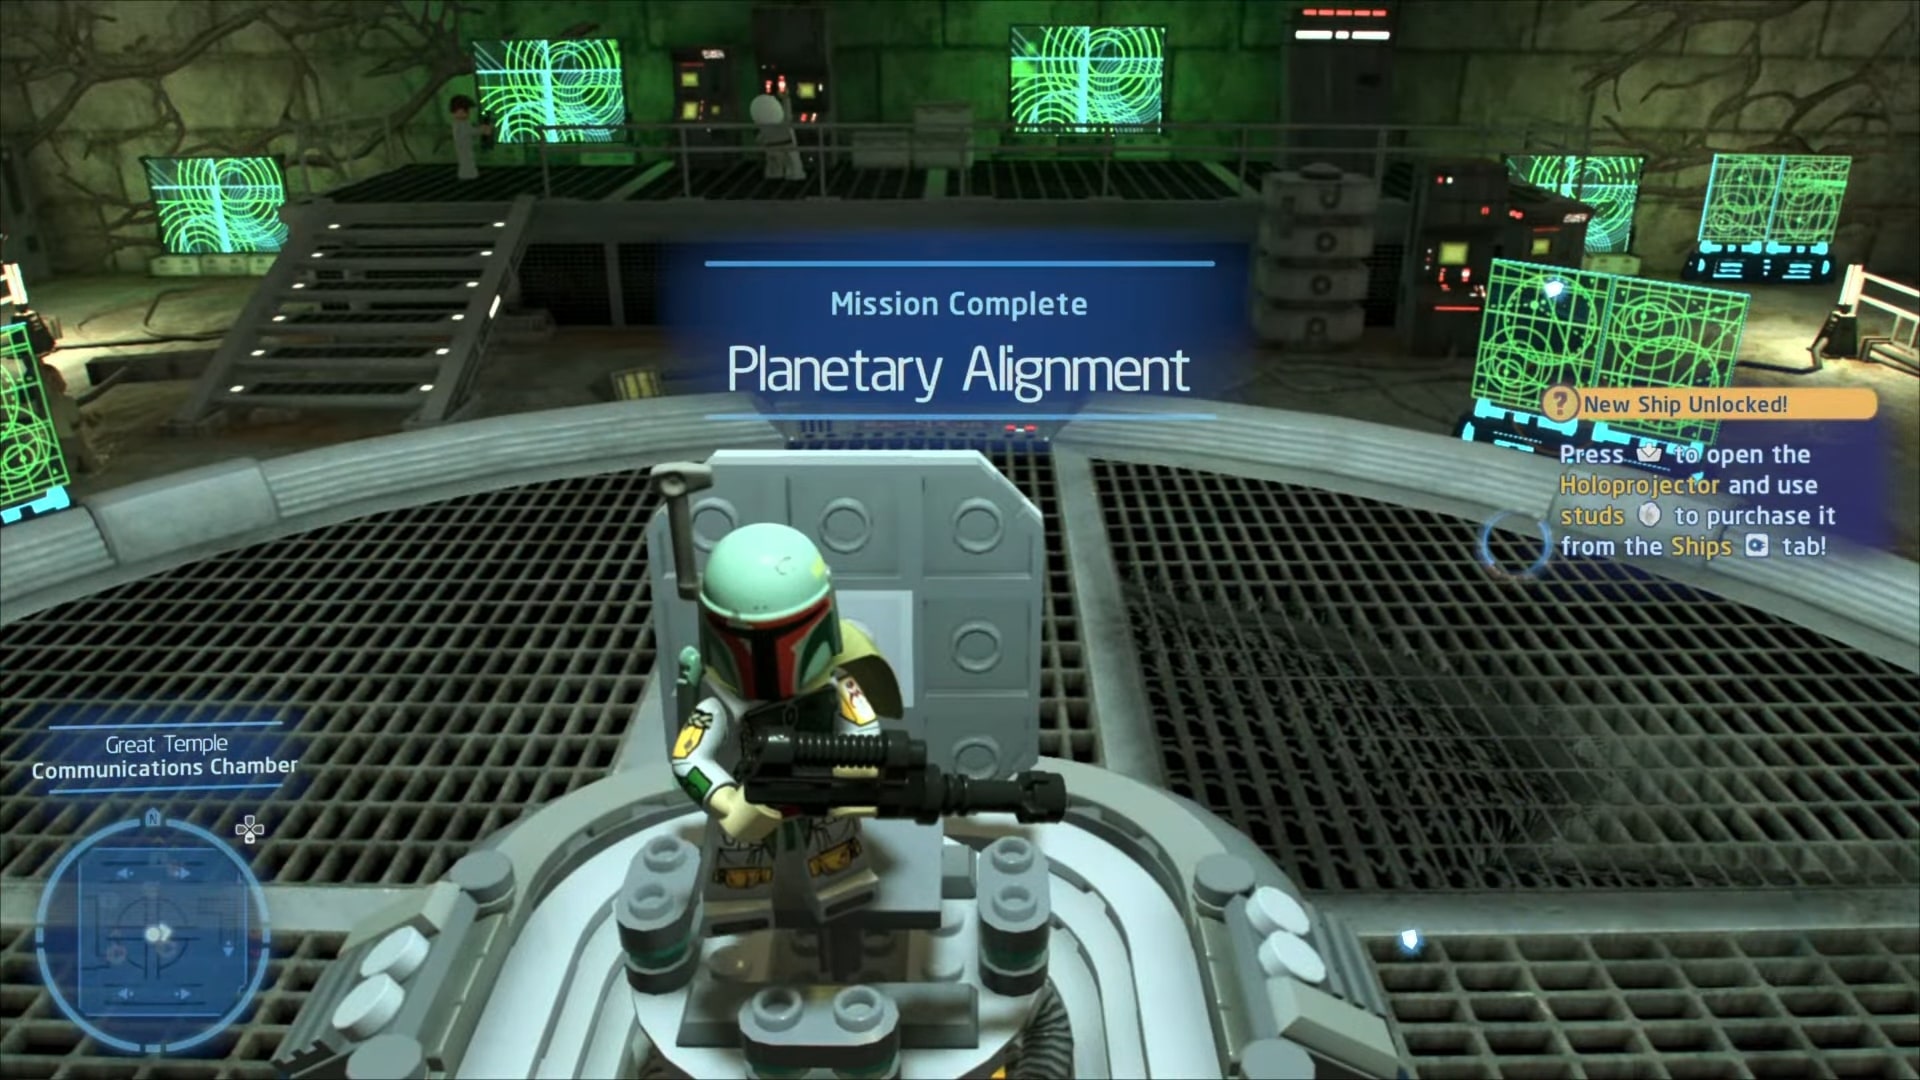 unlocked message screen for LEGO Star Wars Skywalker Saga Unlock Darth Vader's TIE Fighter